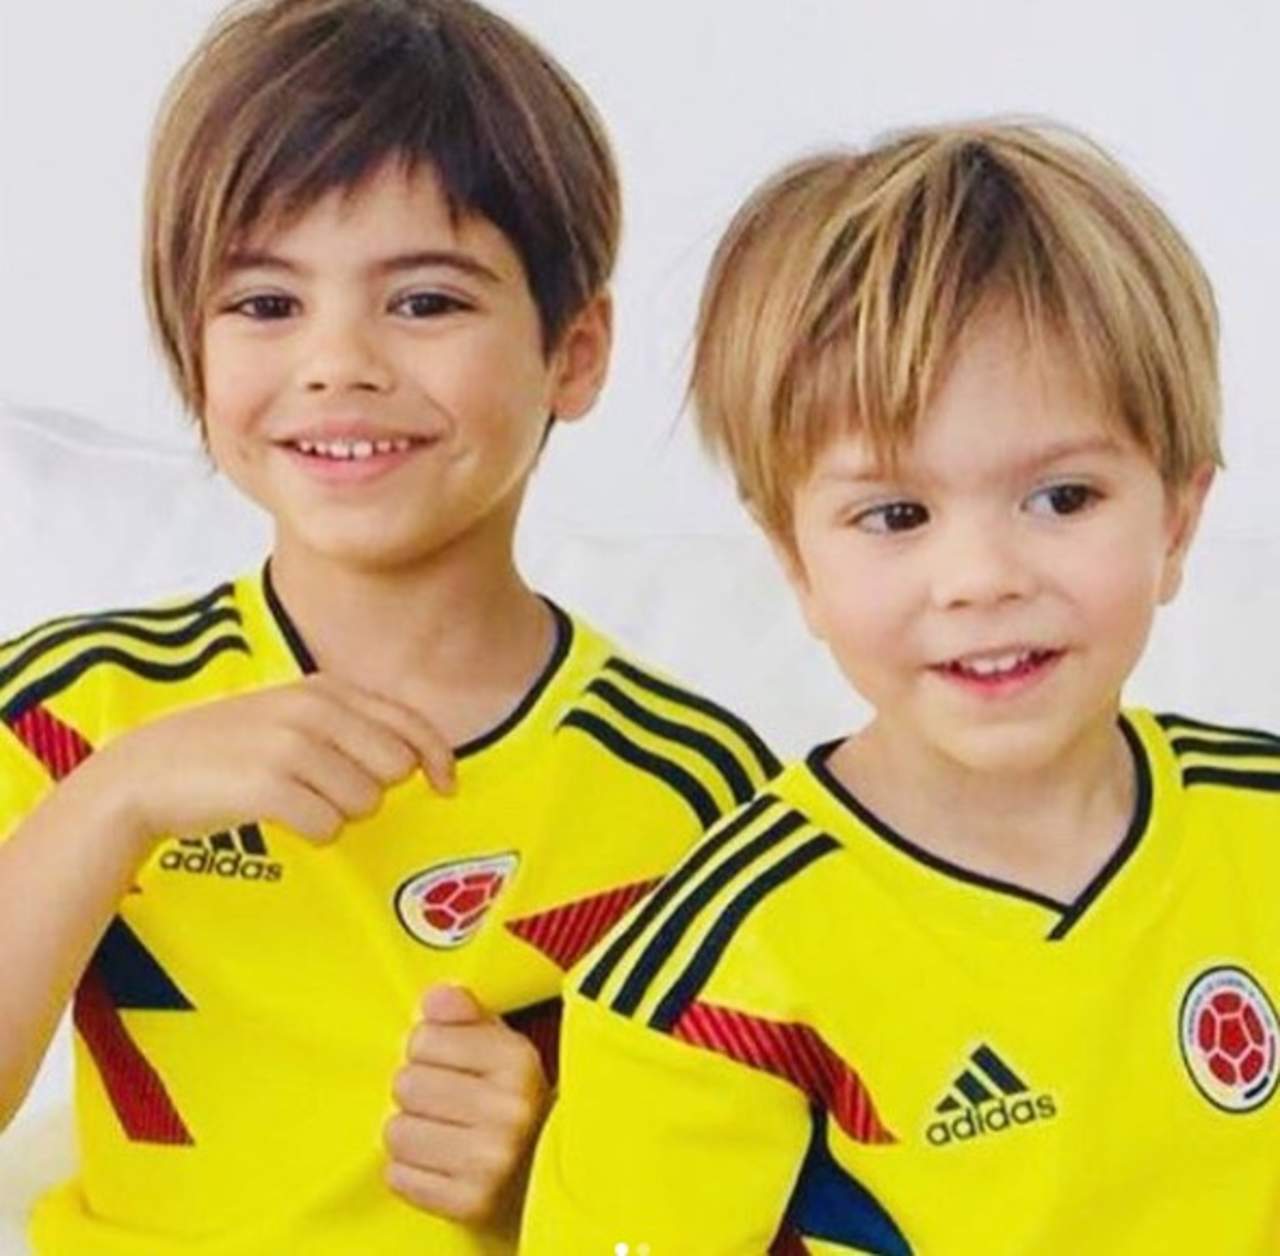 hakira compartió en sus redes sociales dos tiernas fotos de sus hijos con la playera de la selección de Colombia. (ESPECIAL)
